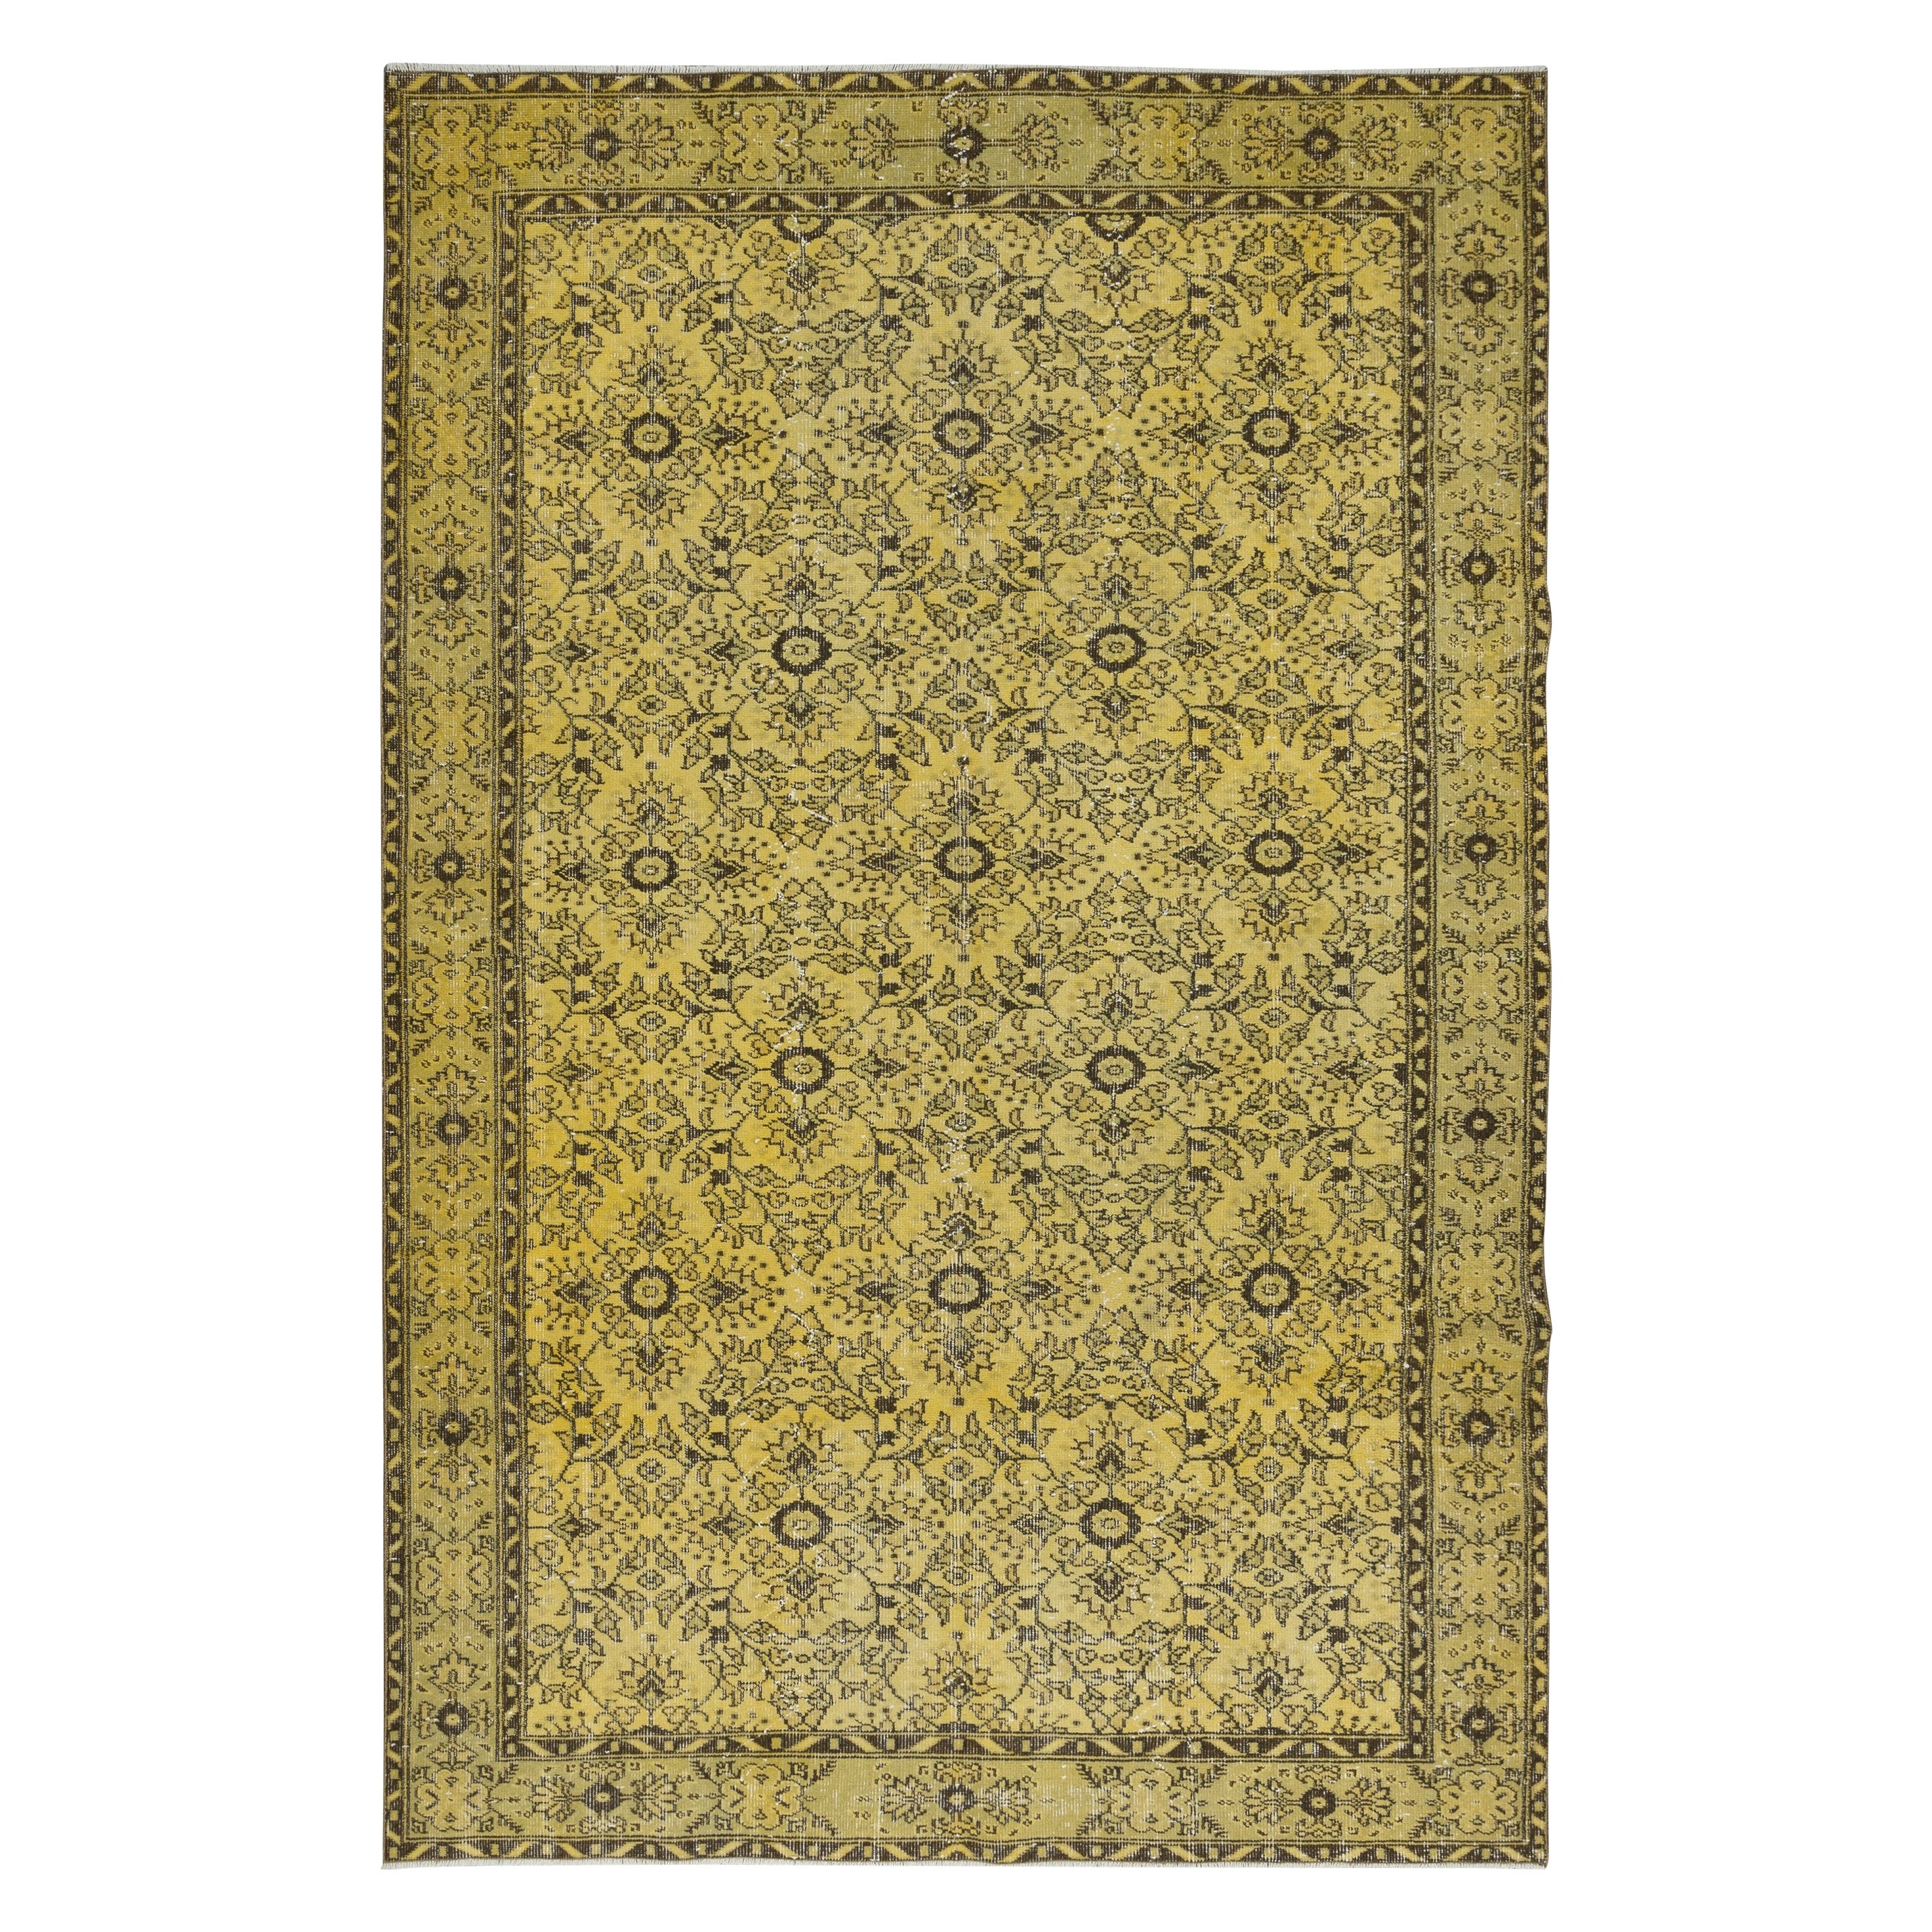 6.6x9.7 Ft Upcycelter gelber moderner türkischer Teppich, floraler handgefertigter Teppich im Angebot